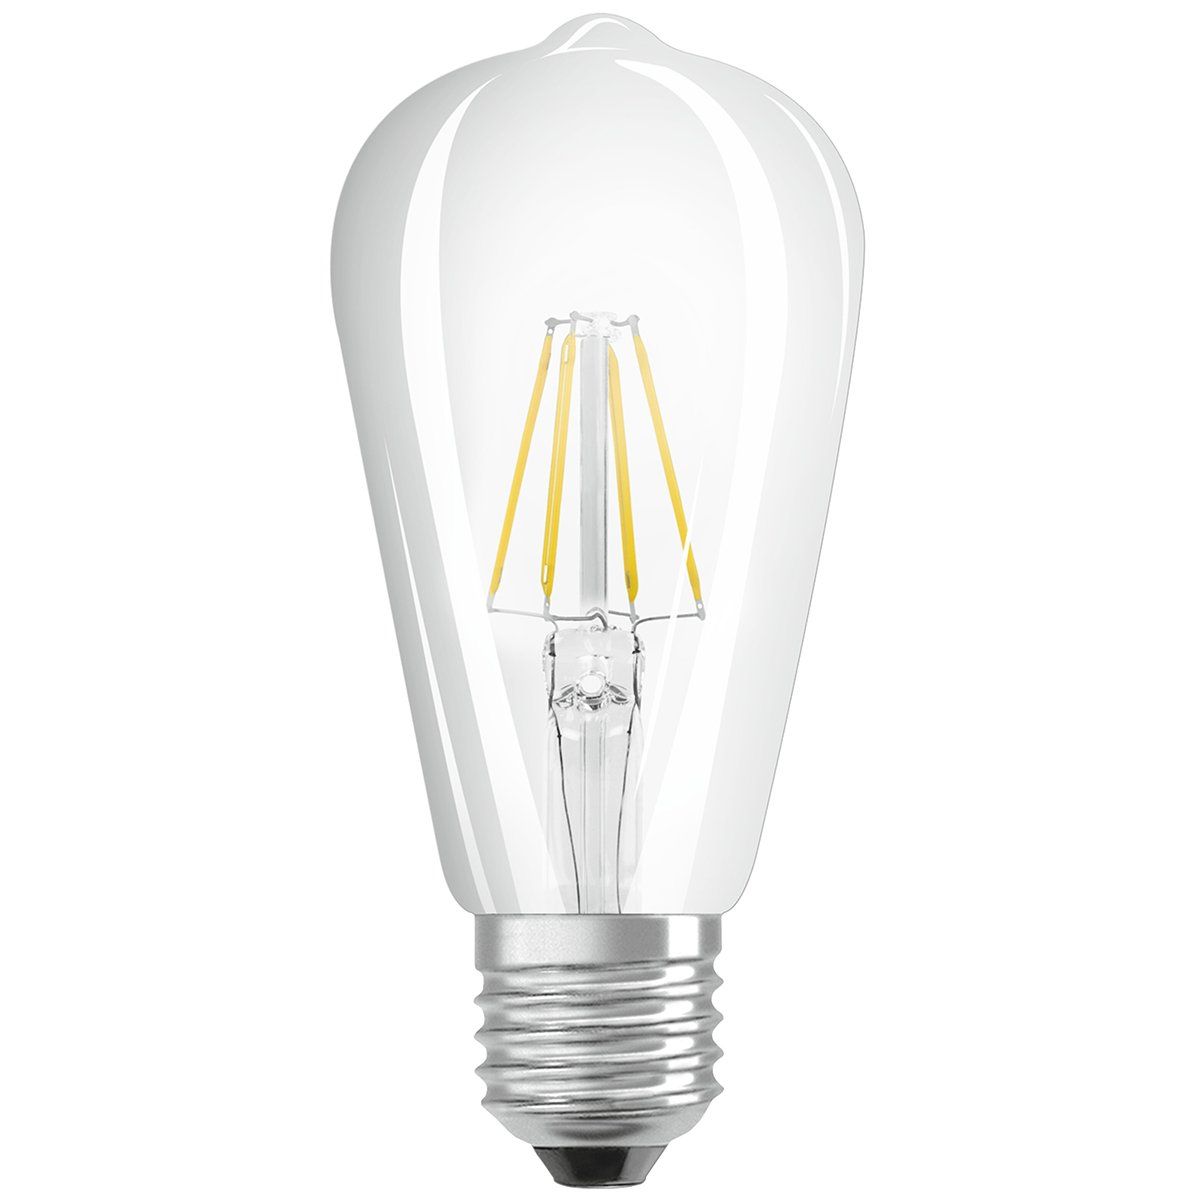 Dimmable E27 ampoule LED, A45, 3w, le verre de fumée, 2200K